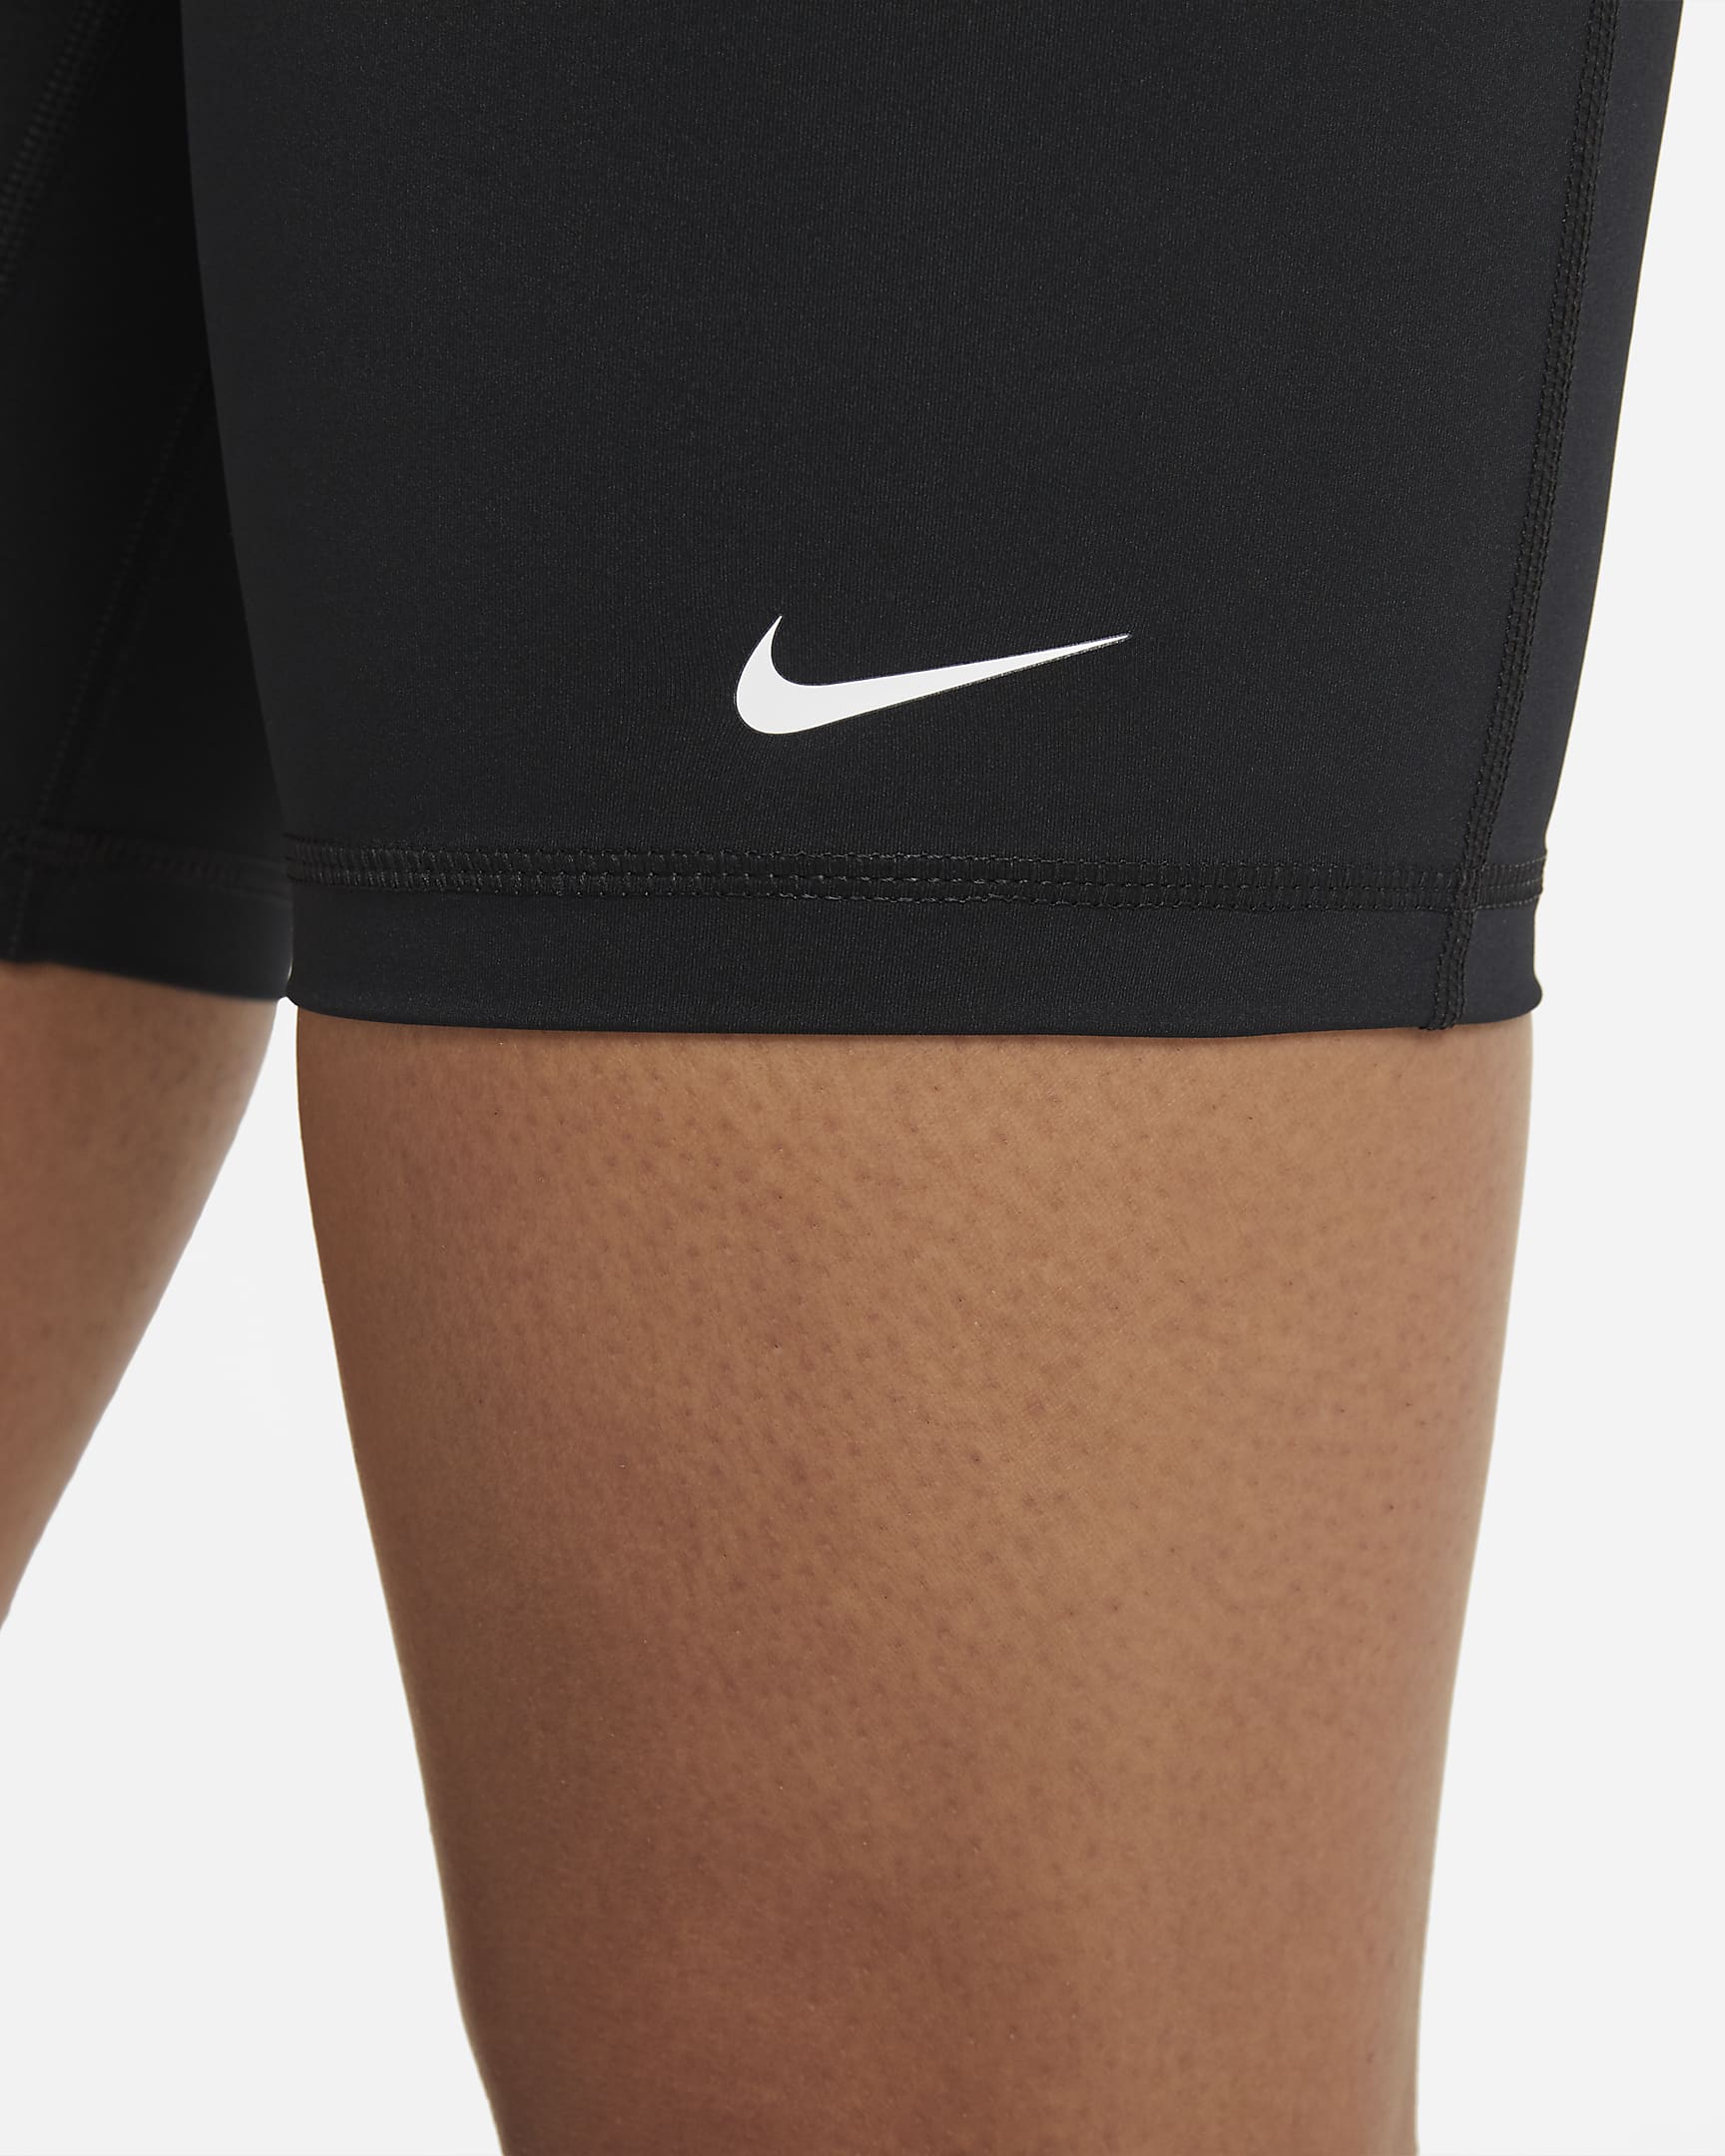 Shorts 18 cm a vita alta Nike Pro 365 – Donna - Nero/Bianco